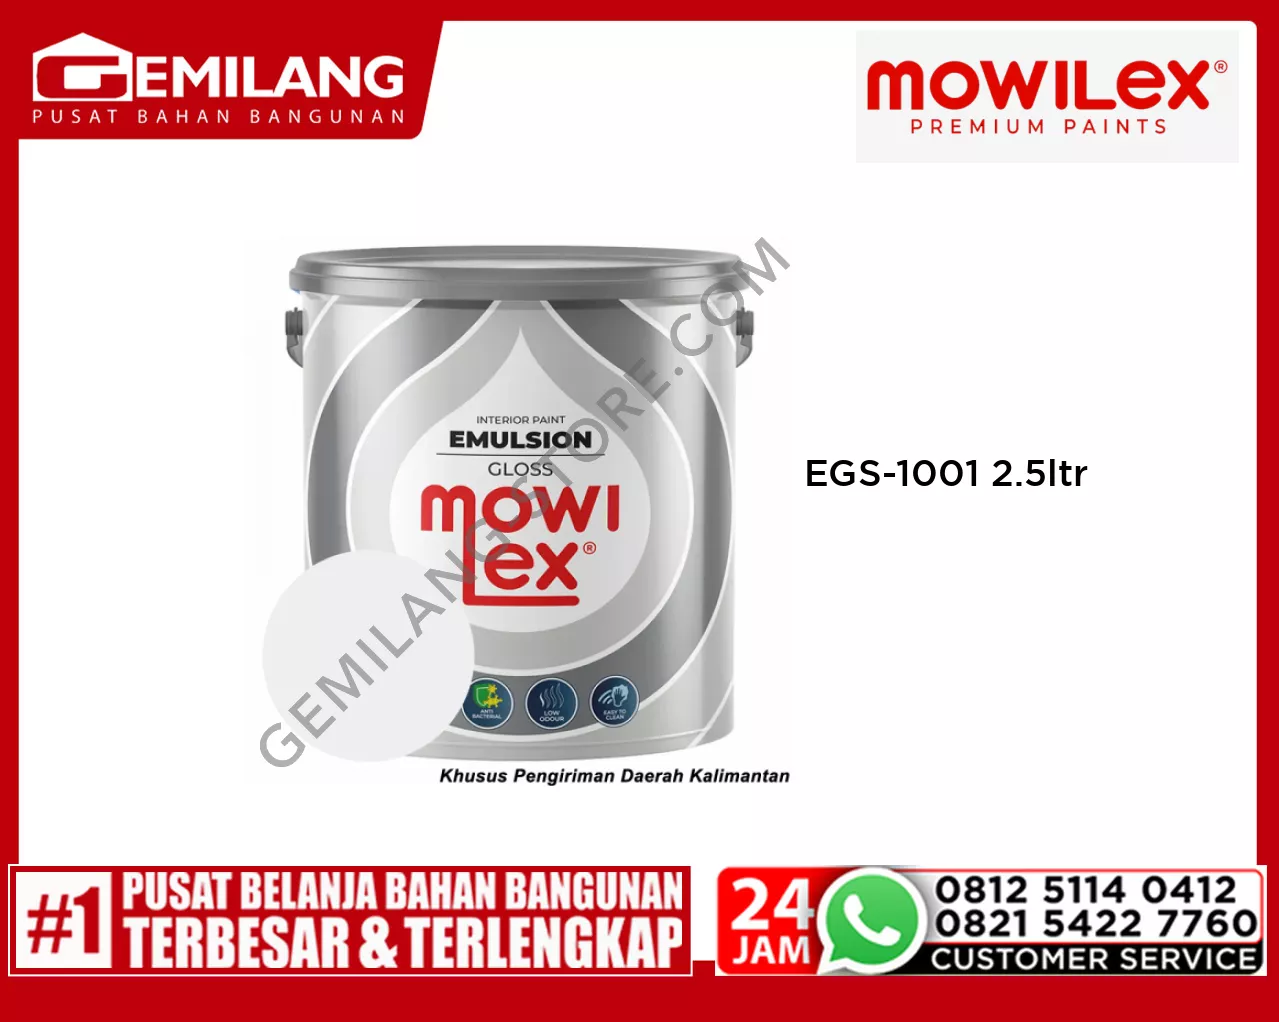 MOWILEX EMULSION GLOSS WHITE EGS-1001 2.5ltr